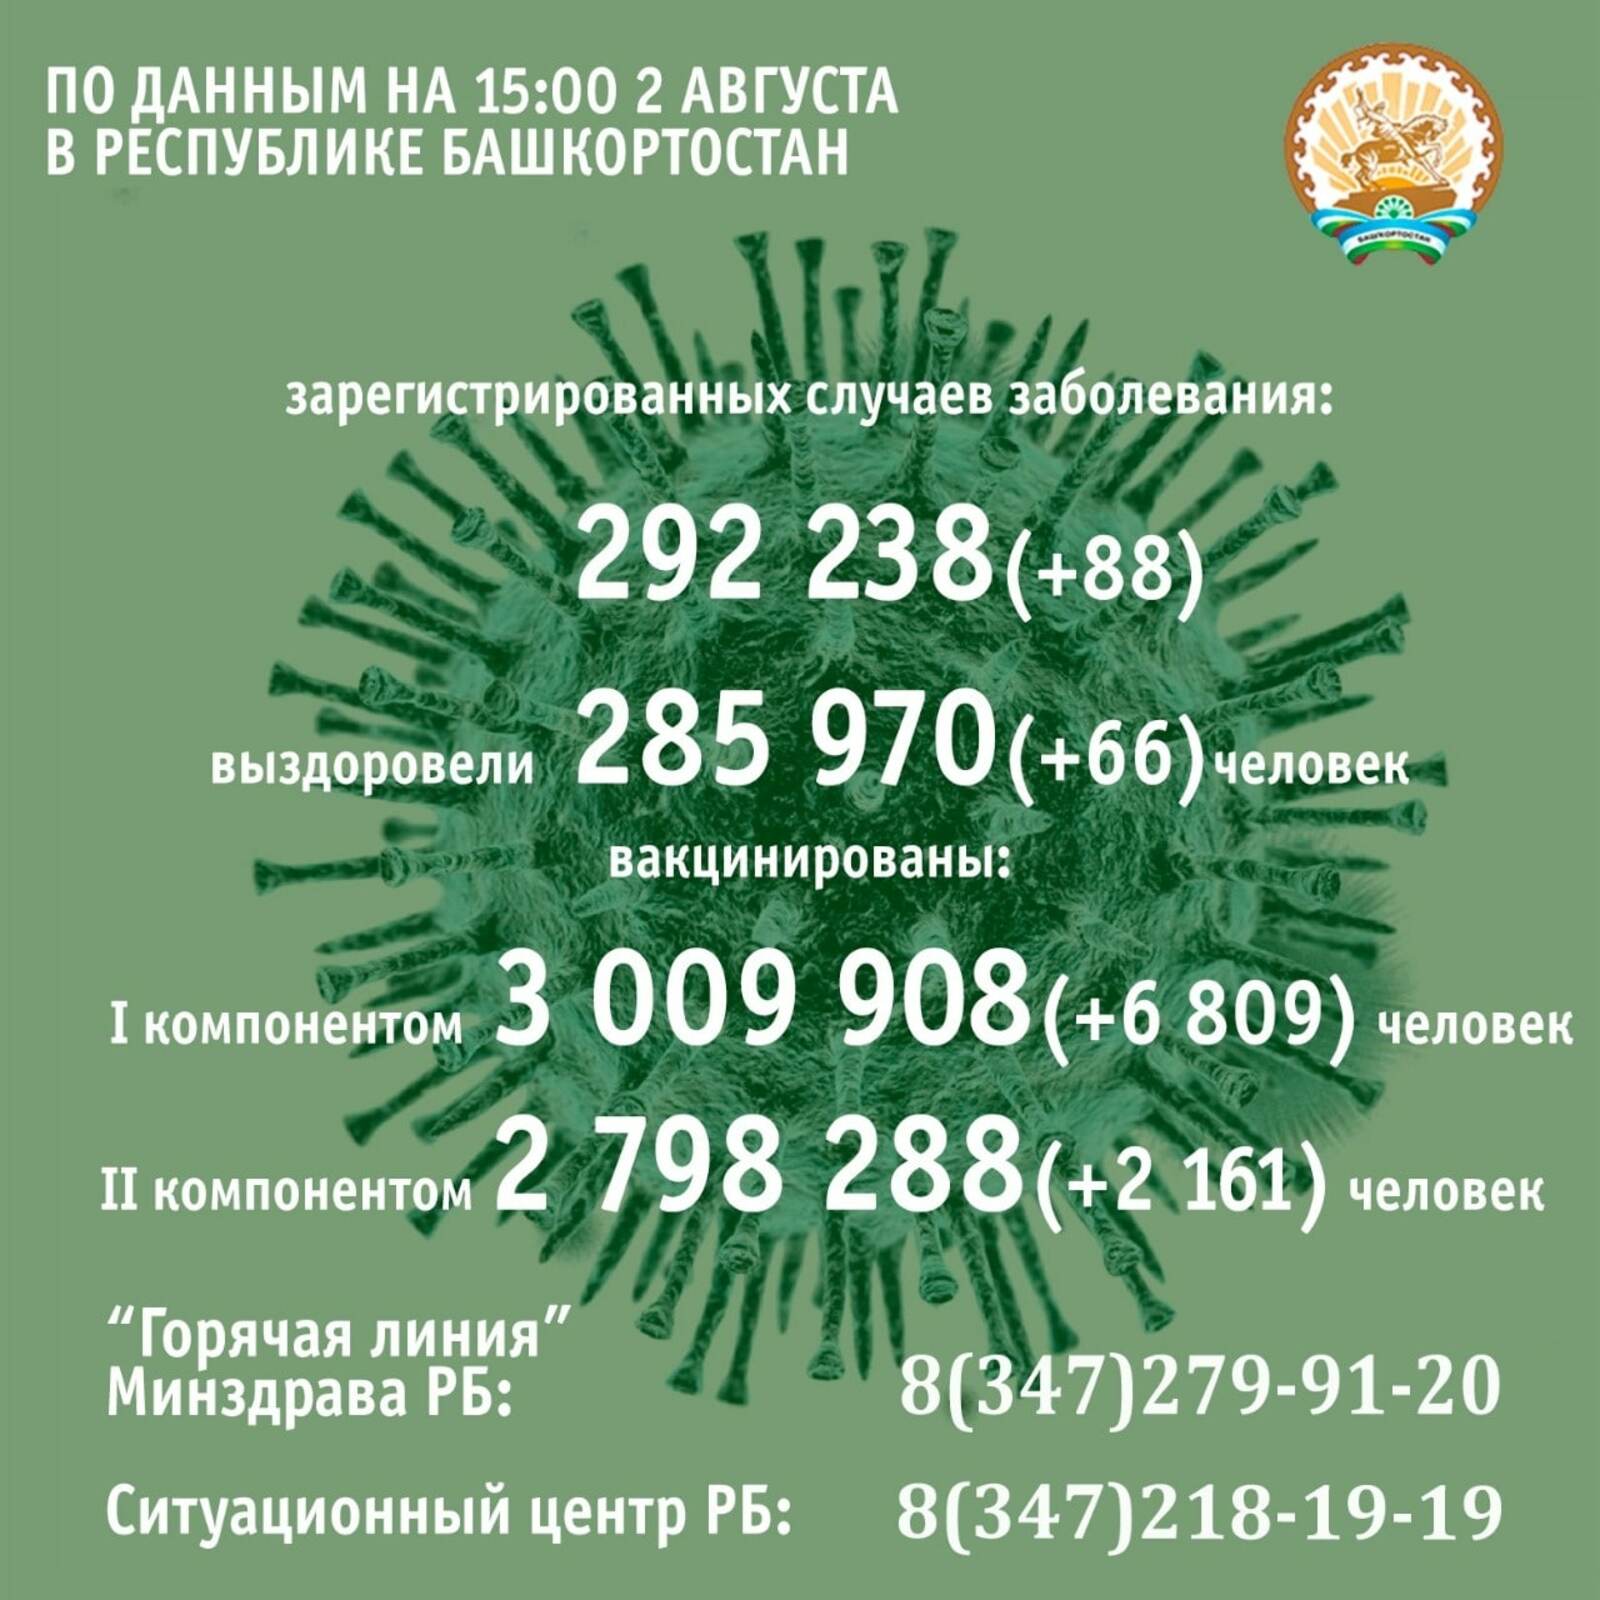 По данным на 15 часов 2 августа, в Республике Башкортостан подтвердили 292 238 случаев коронавирусной инфекции